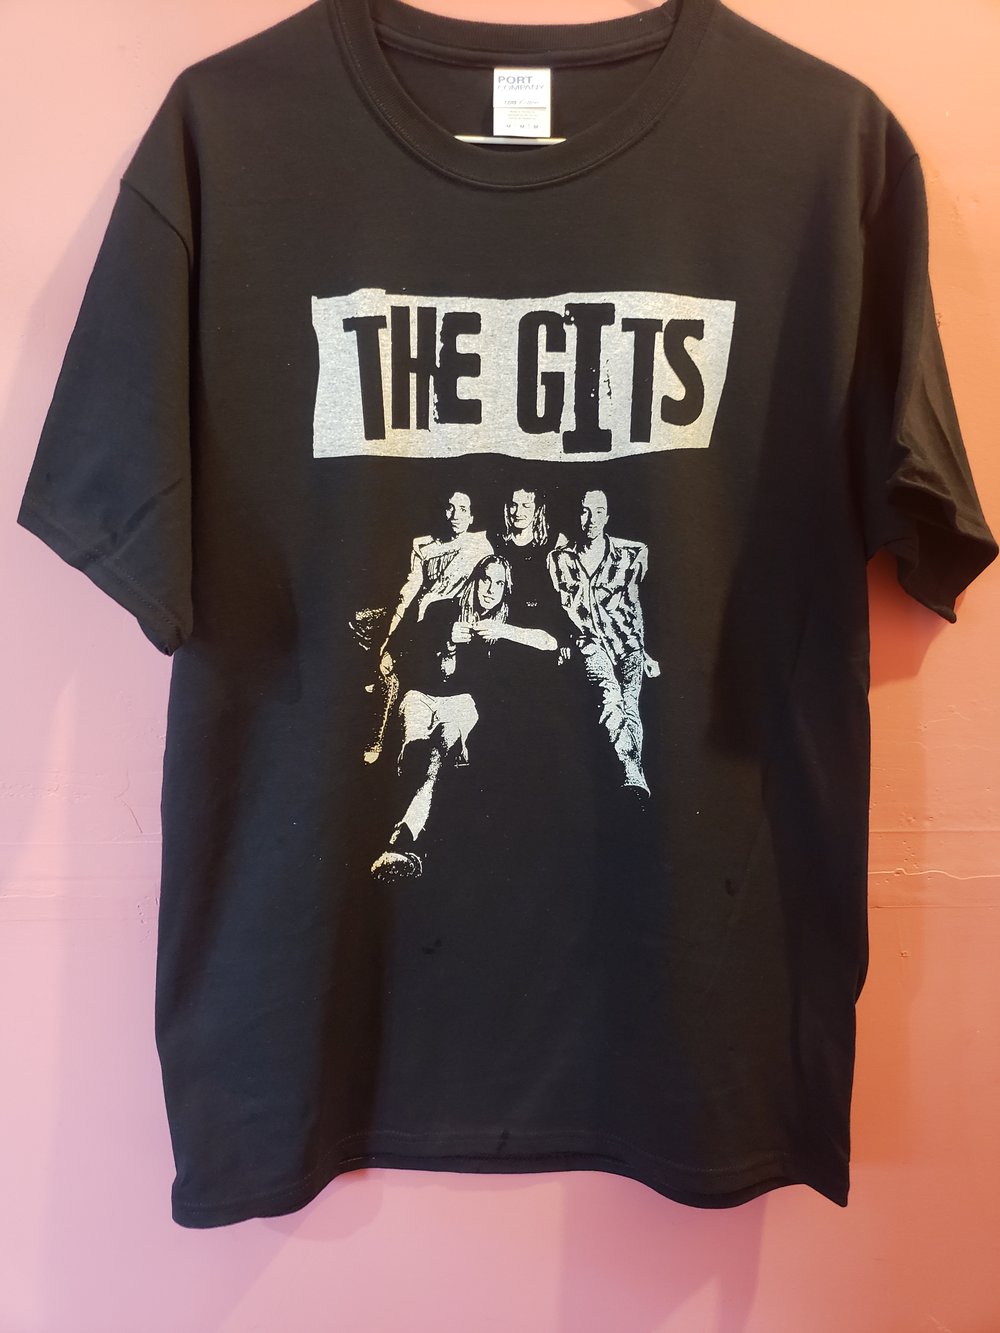 The GITS